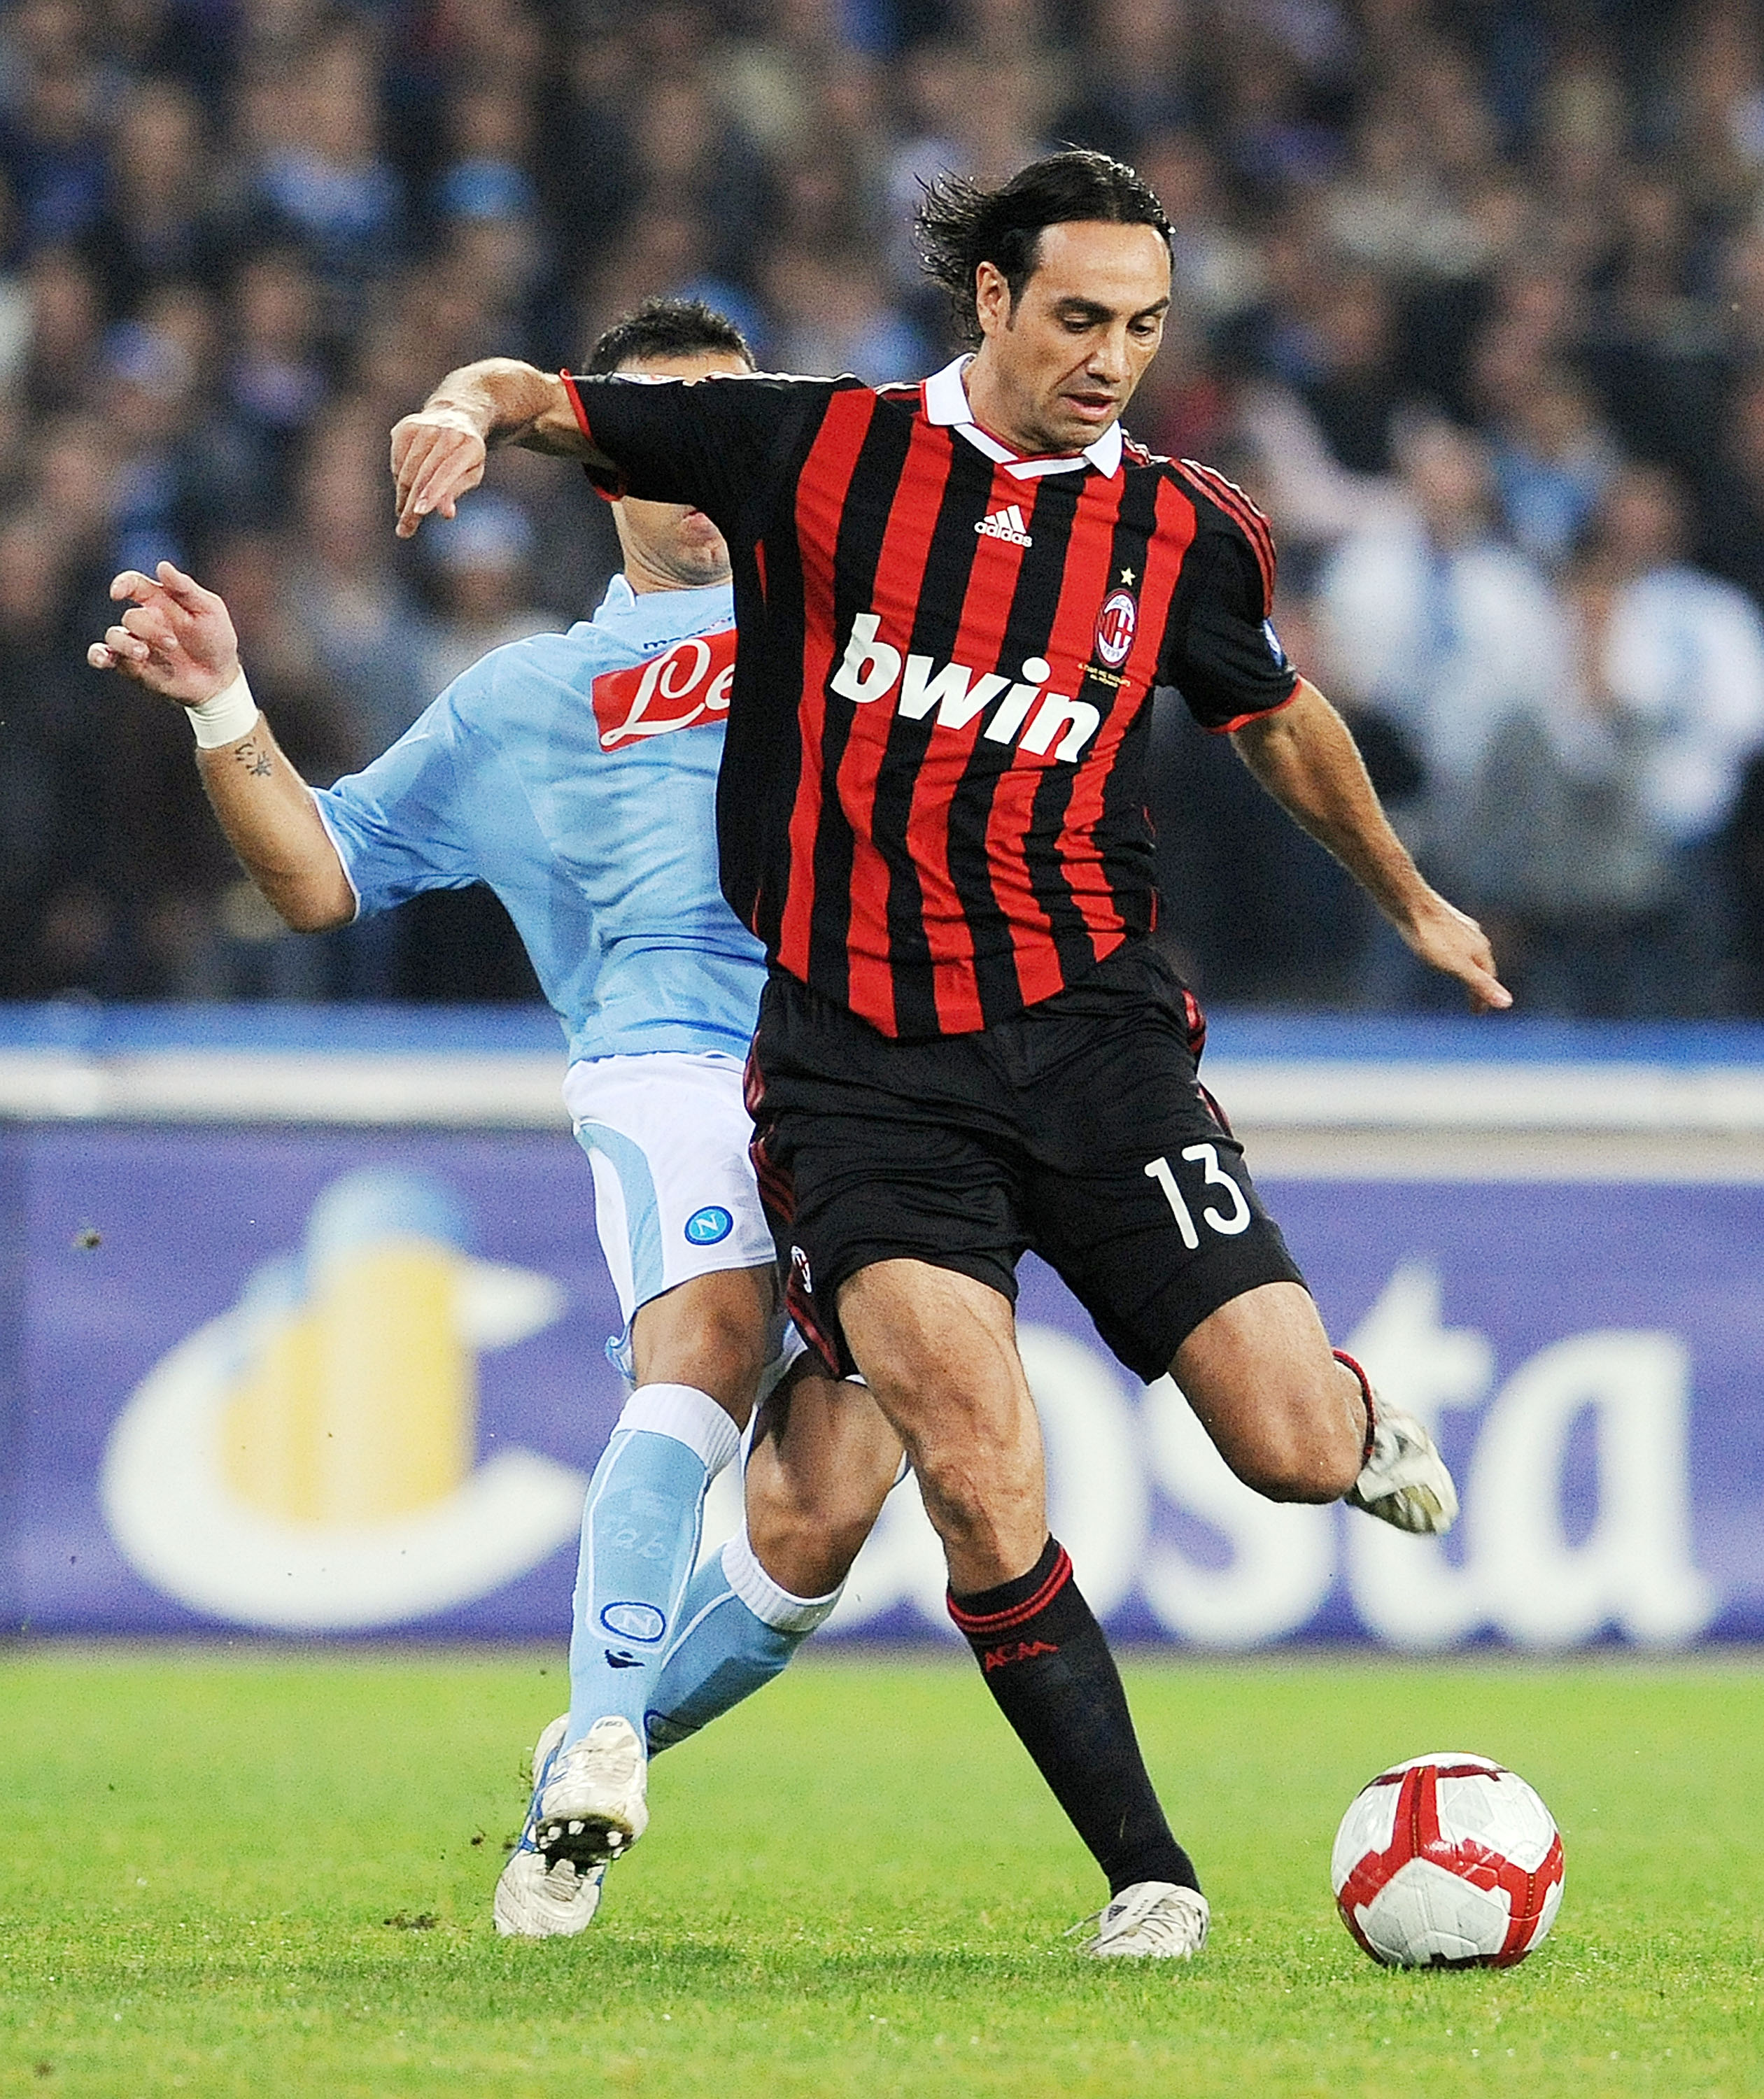 Nesta against Napoli in 2009.